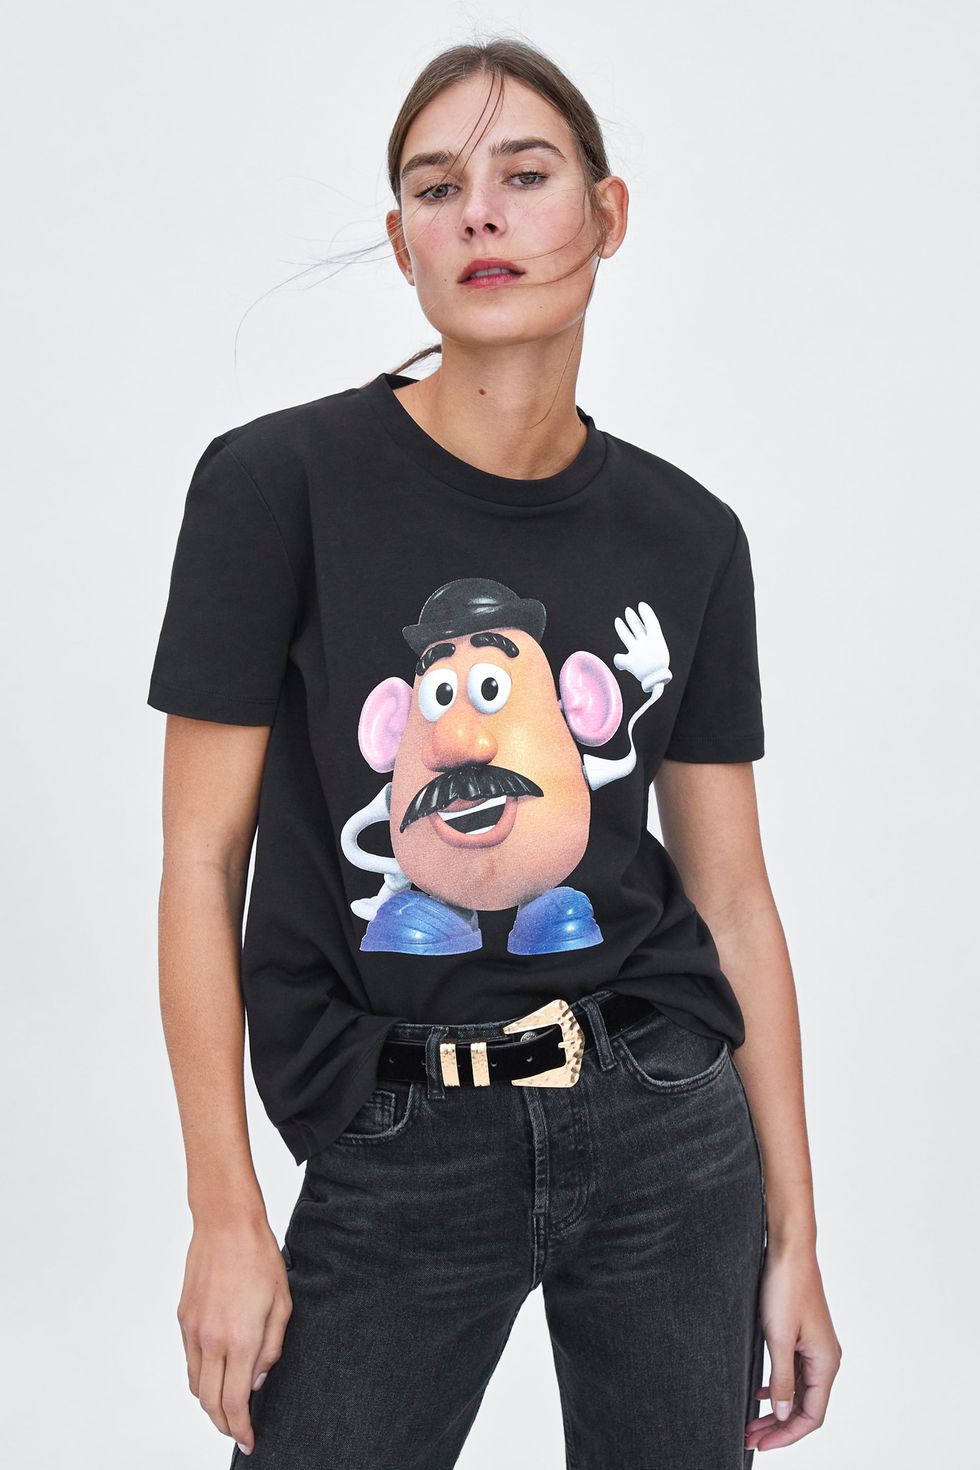 Zara - Las camisetas de Zara tienen nuevos protagonistas: los juguetes 'Toy Story'